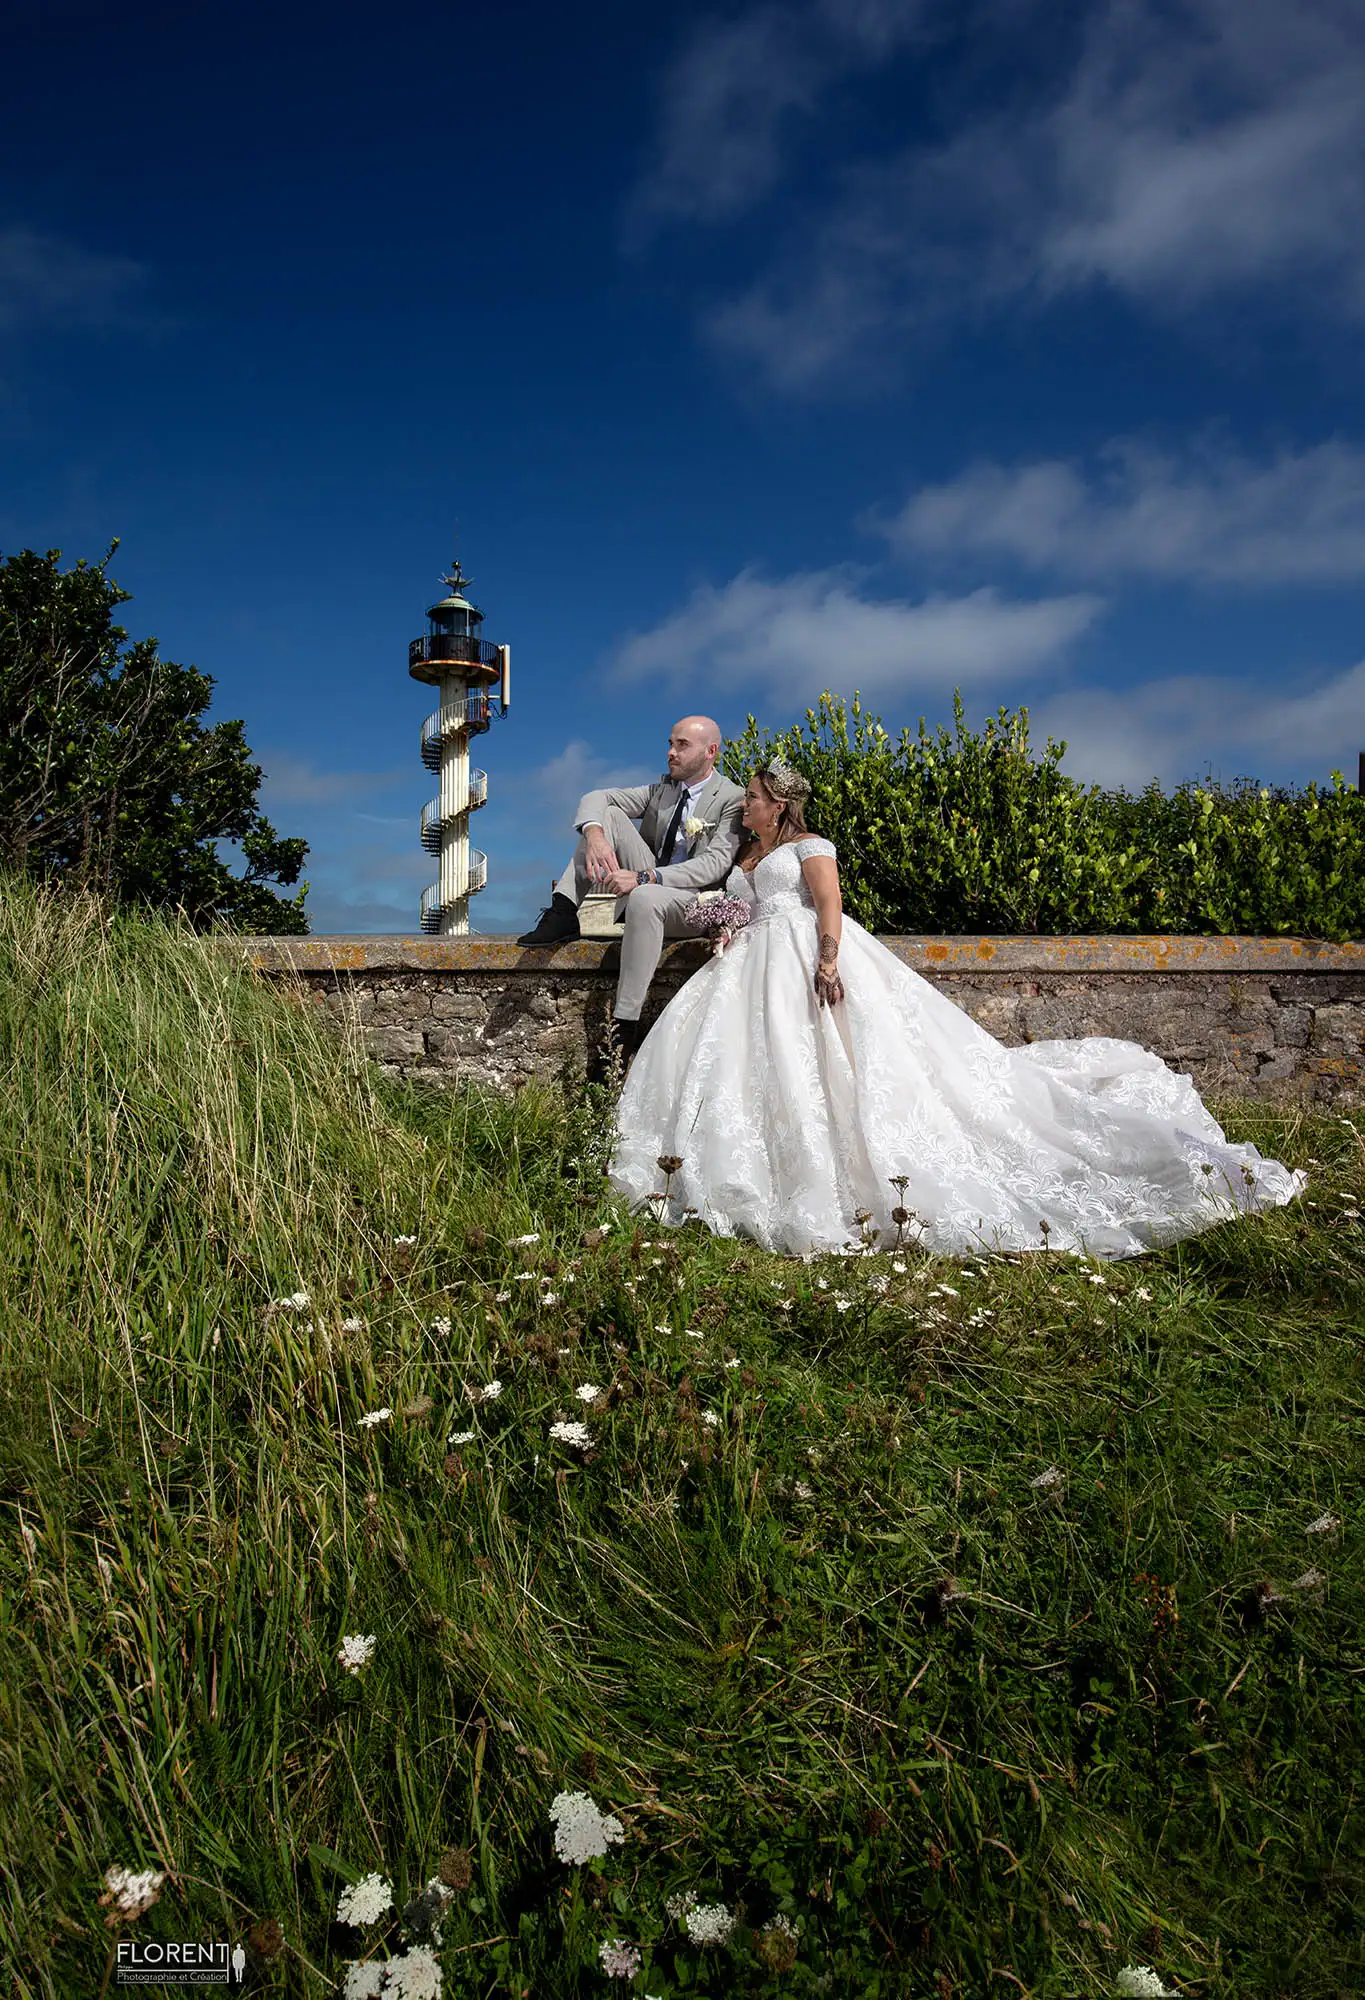 photographe mariage romantique sur falaise avec vue sur mer boulogne sur mer florent photographe boulogne sur mer lille paris